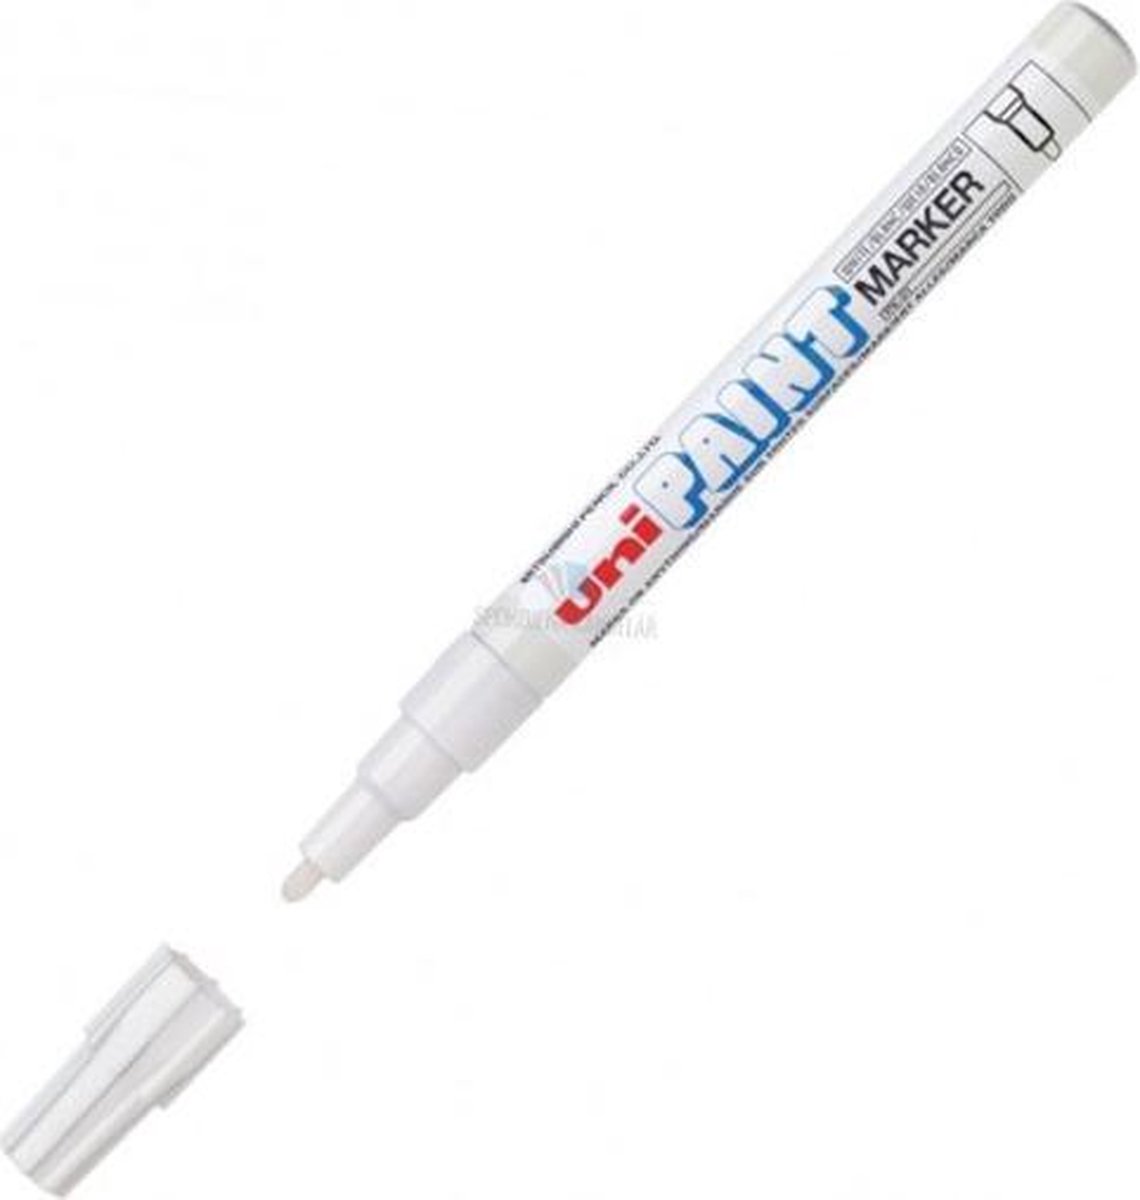 Uni Paint PX-21 Paint Marker - Witte verfstift met 0.8 - 1.2 mm punt